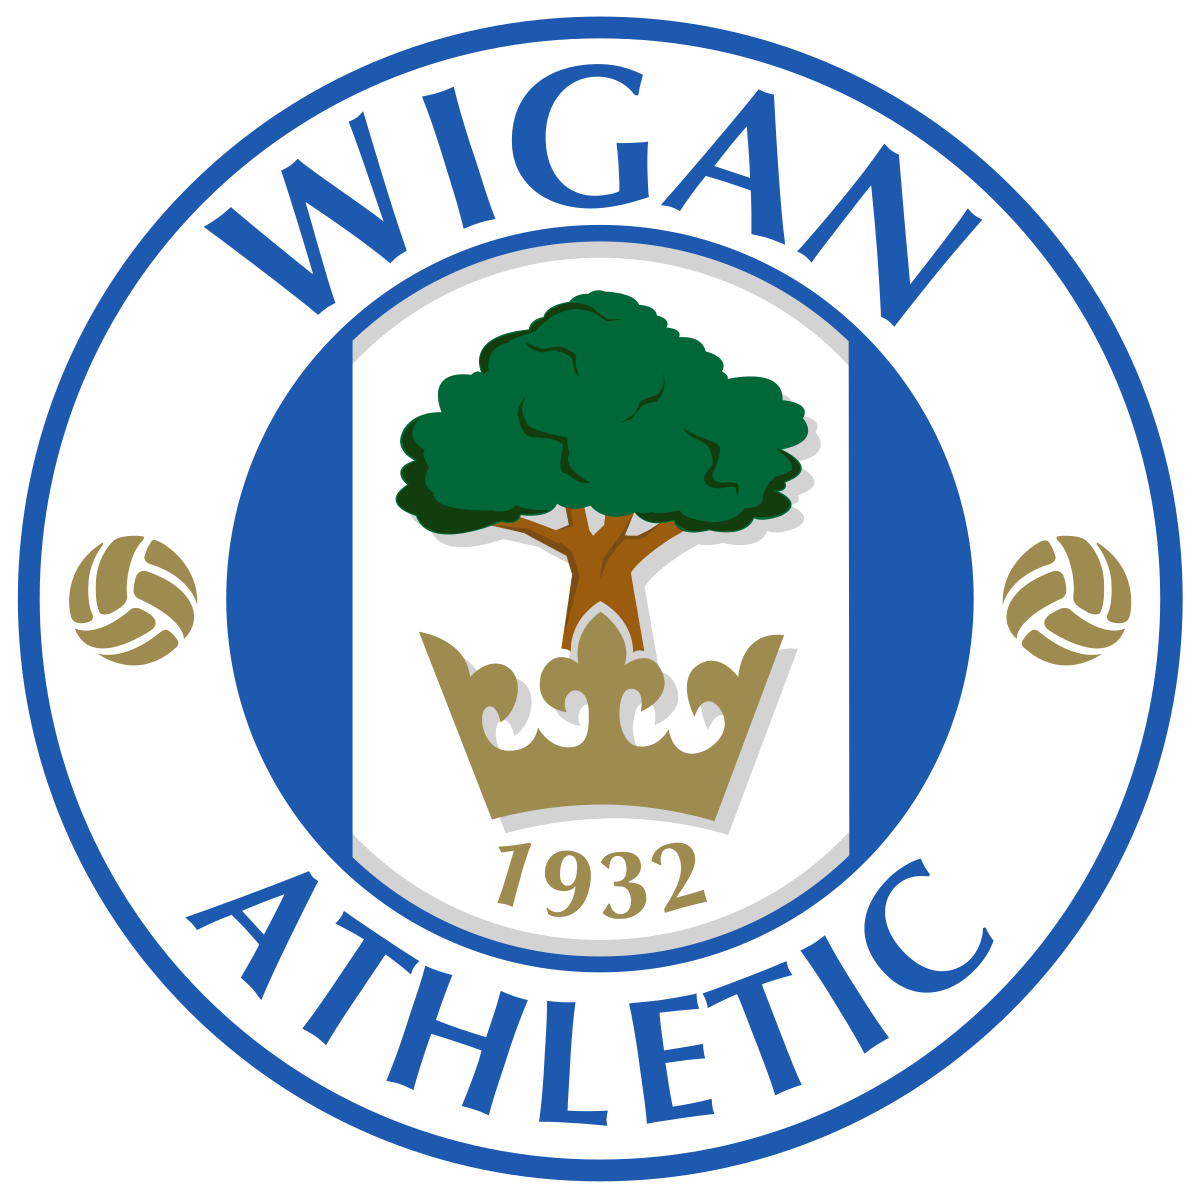 Wigan U-18 logo